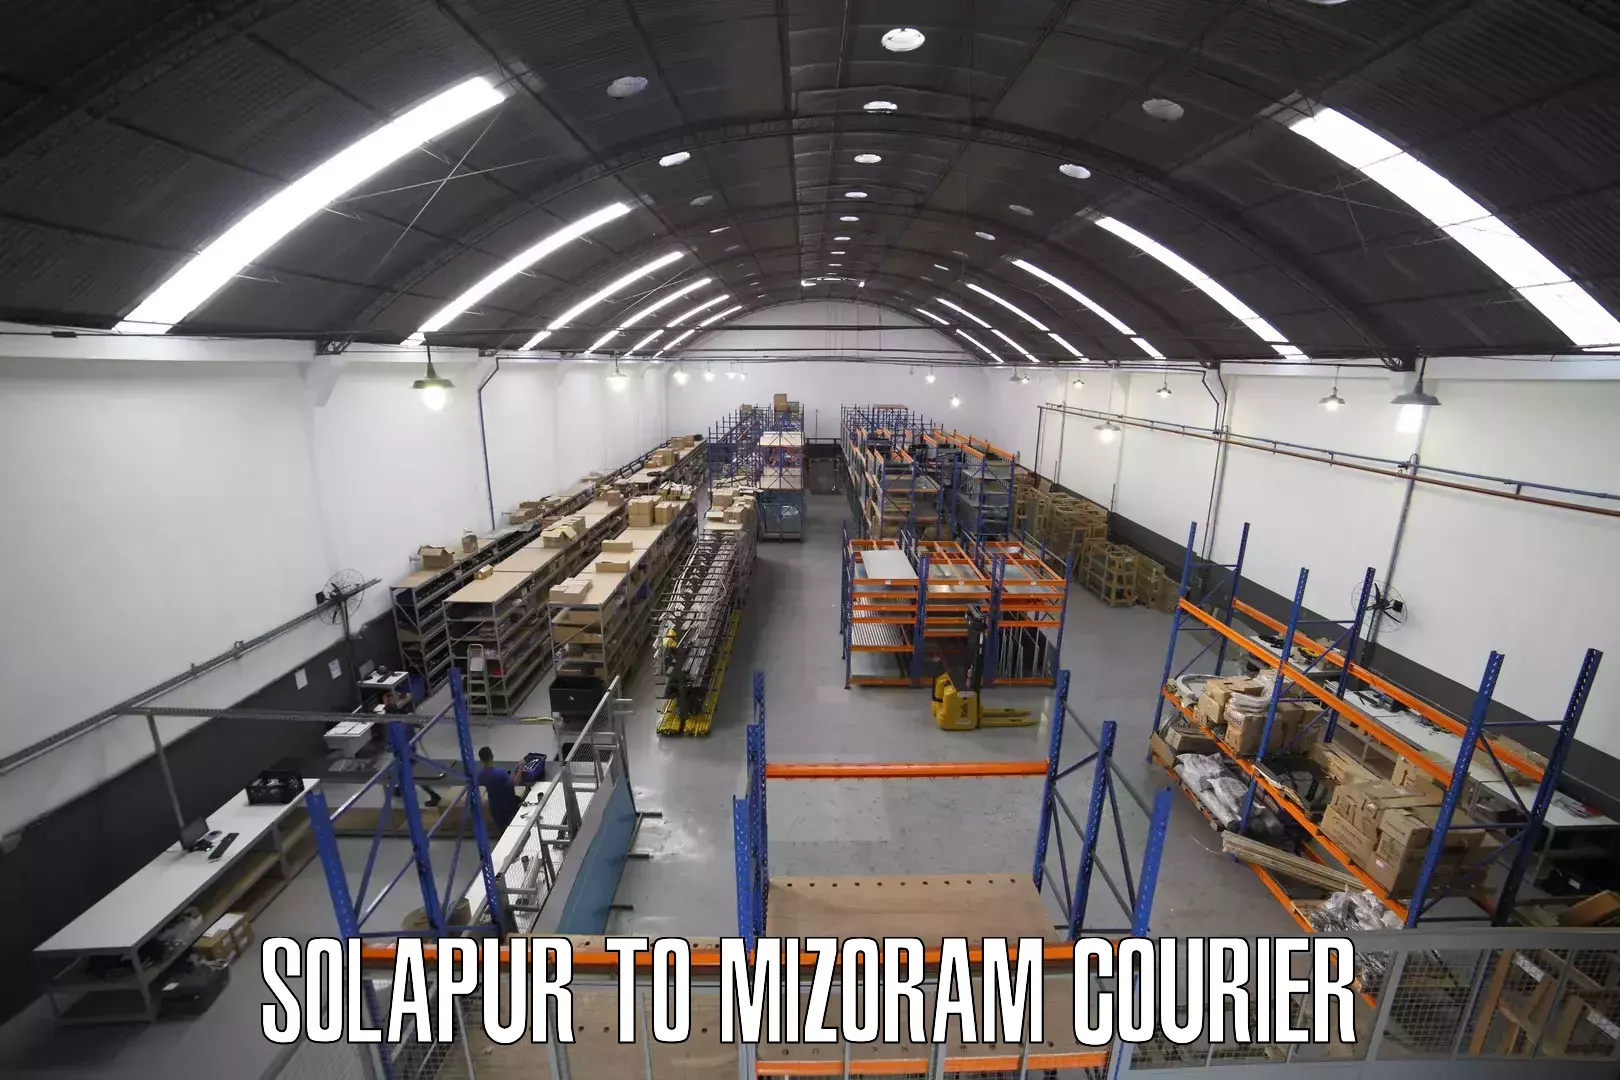 Multi-city courier Solapur to Khawzawl